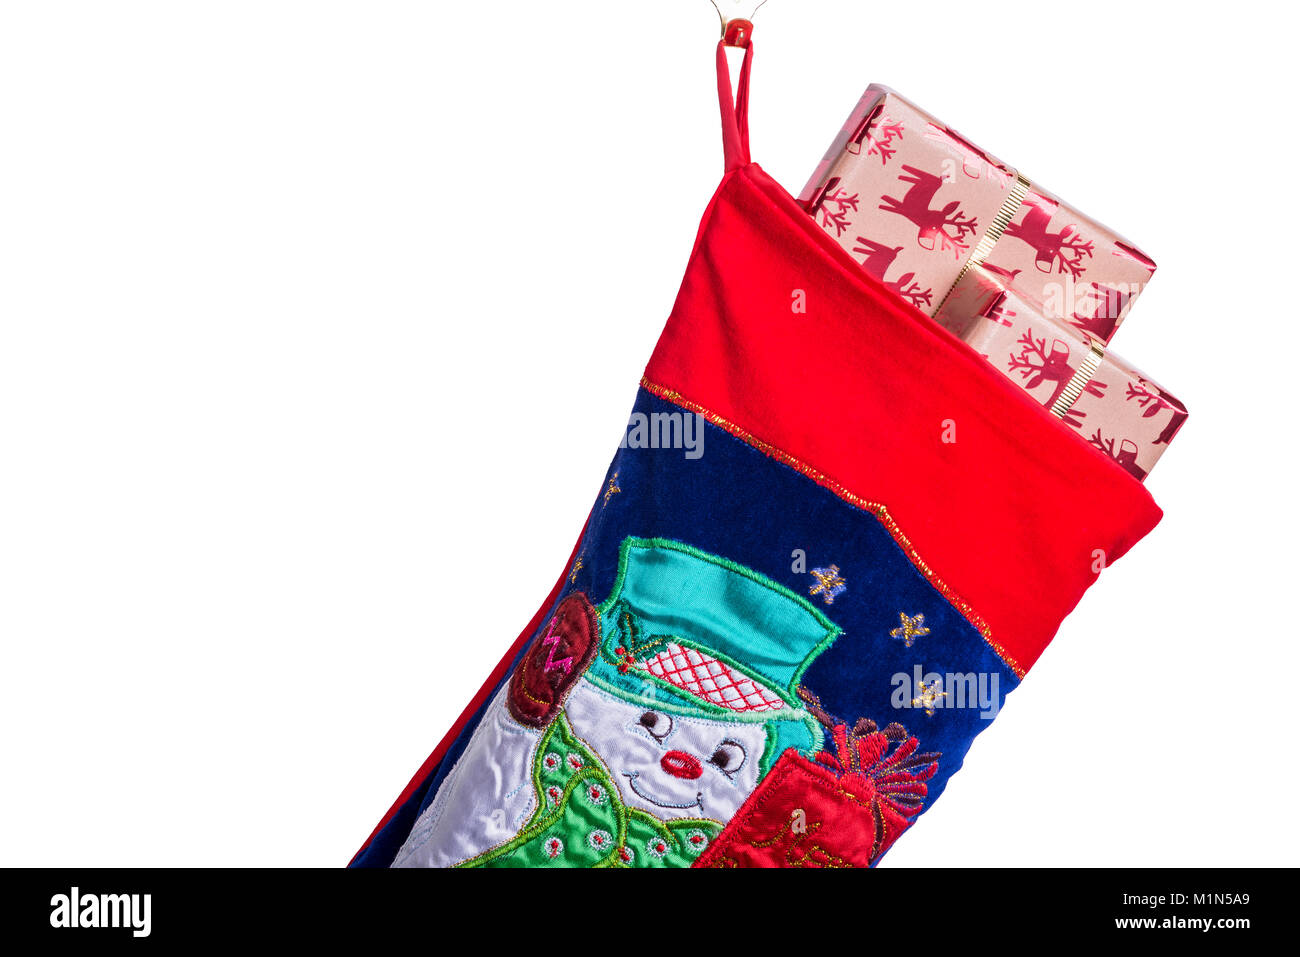 Traditionelle Weihnachten oder Xmas Stocking, mit Geschenk eingepackten Geschenke oder Geschenke gefüllt. Stockfoto